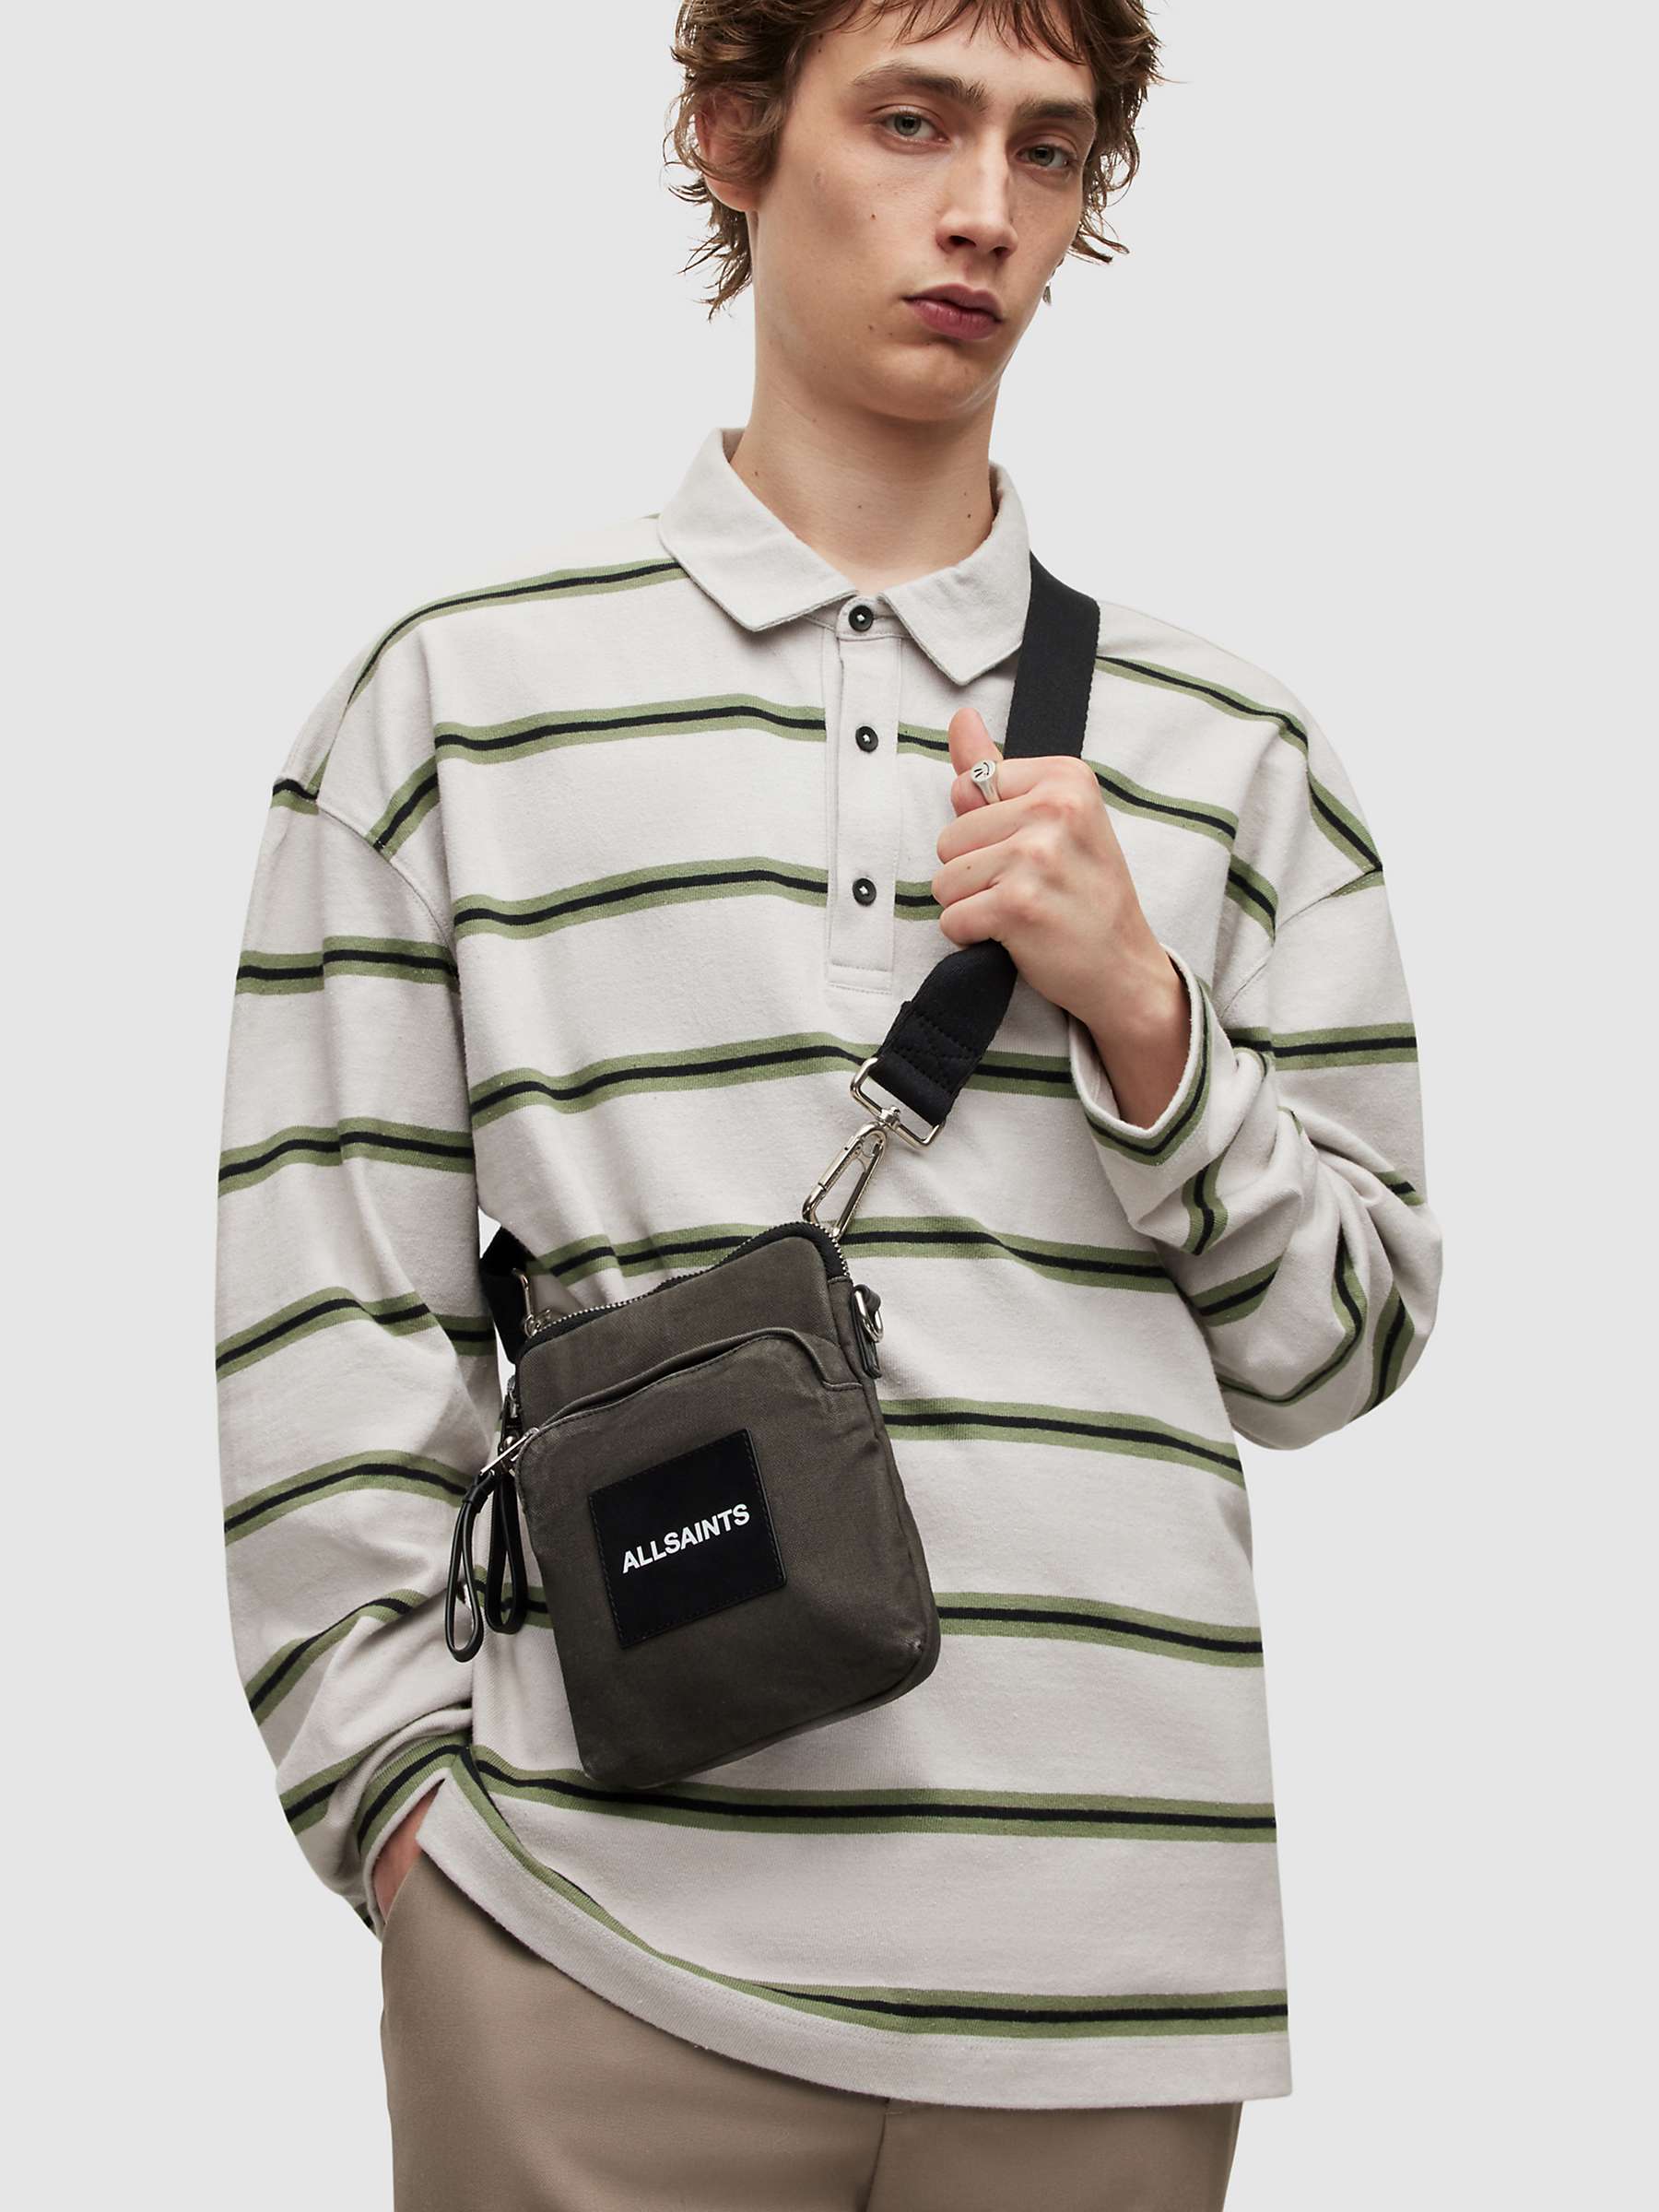 Buy AllSaints Pouch Bag, Black Online at johnlewis.com